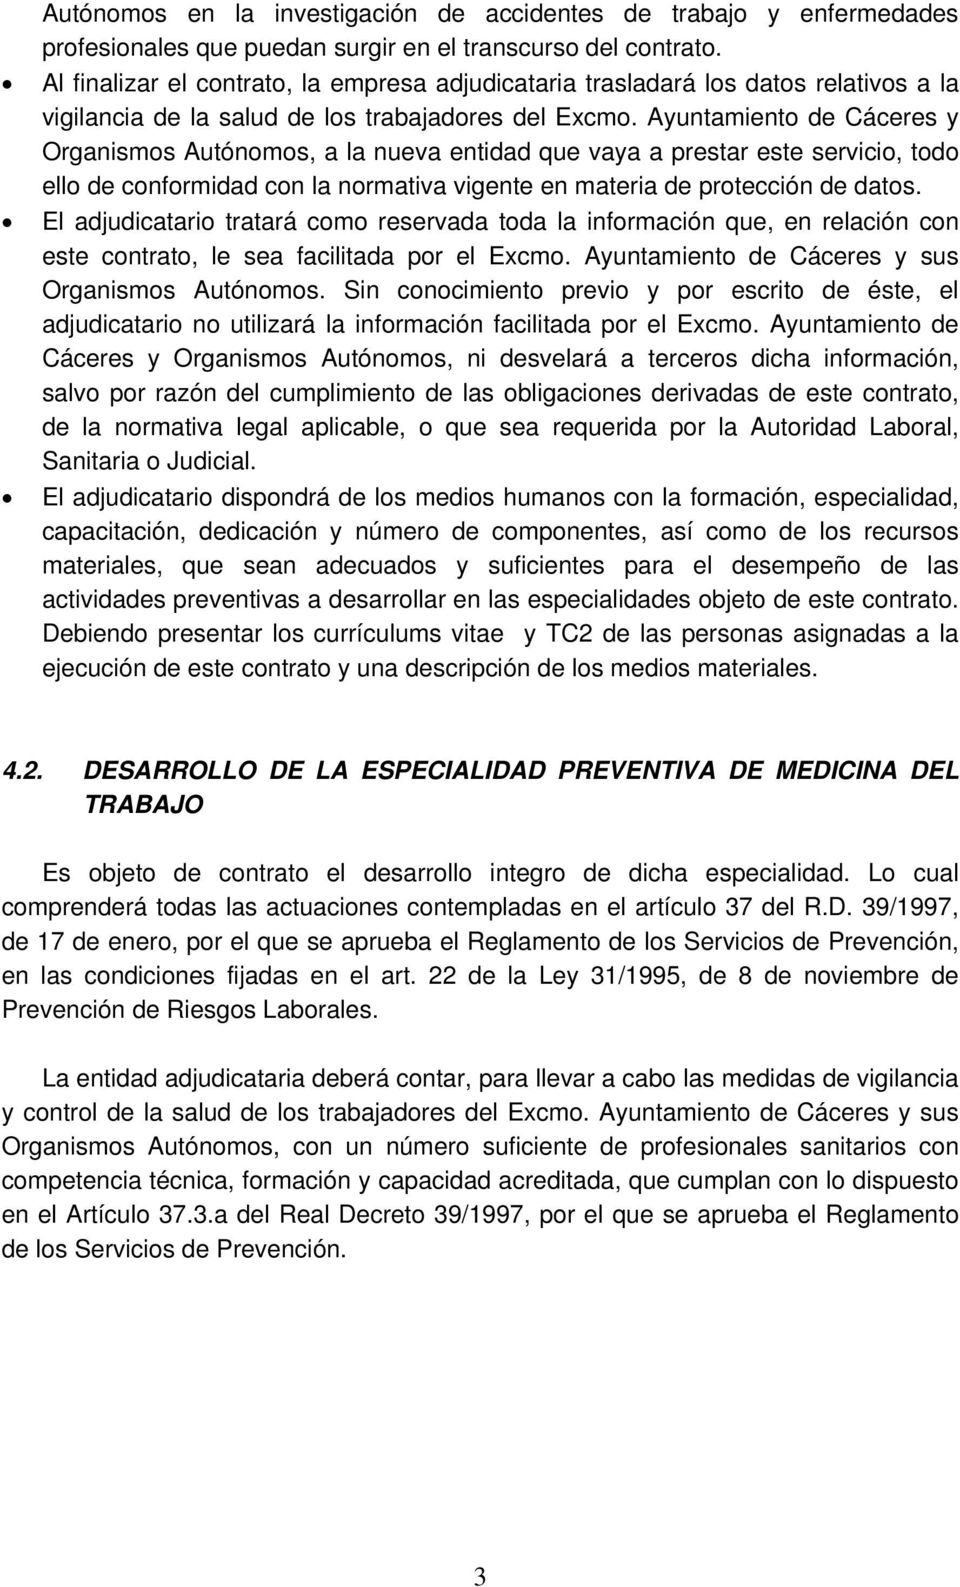 Ayuntamiento de Cáceres y Organismos Autónomos, a la nueva entidad que vaya a prestar este servicio, todo ello de conformidad con la normativa vigente en materia de protección de datos.